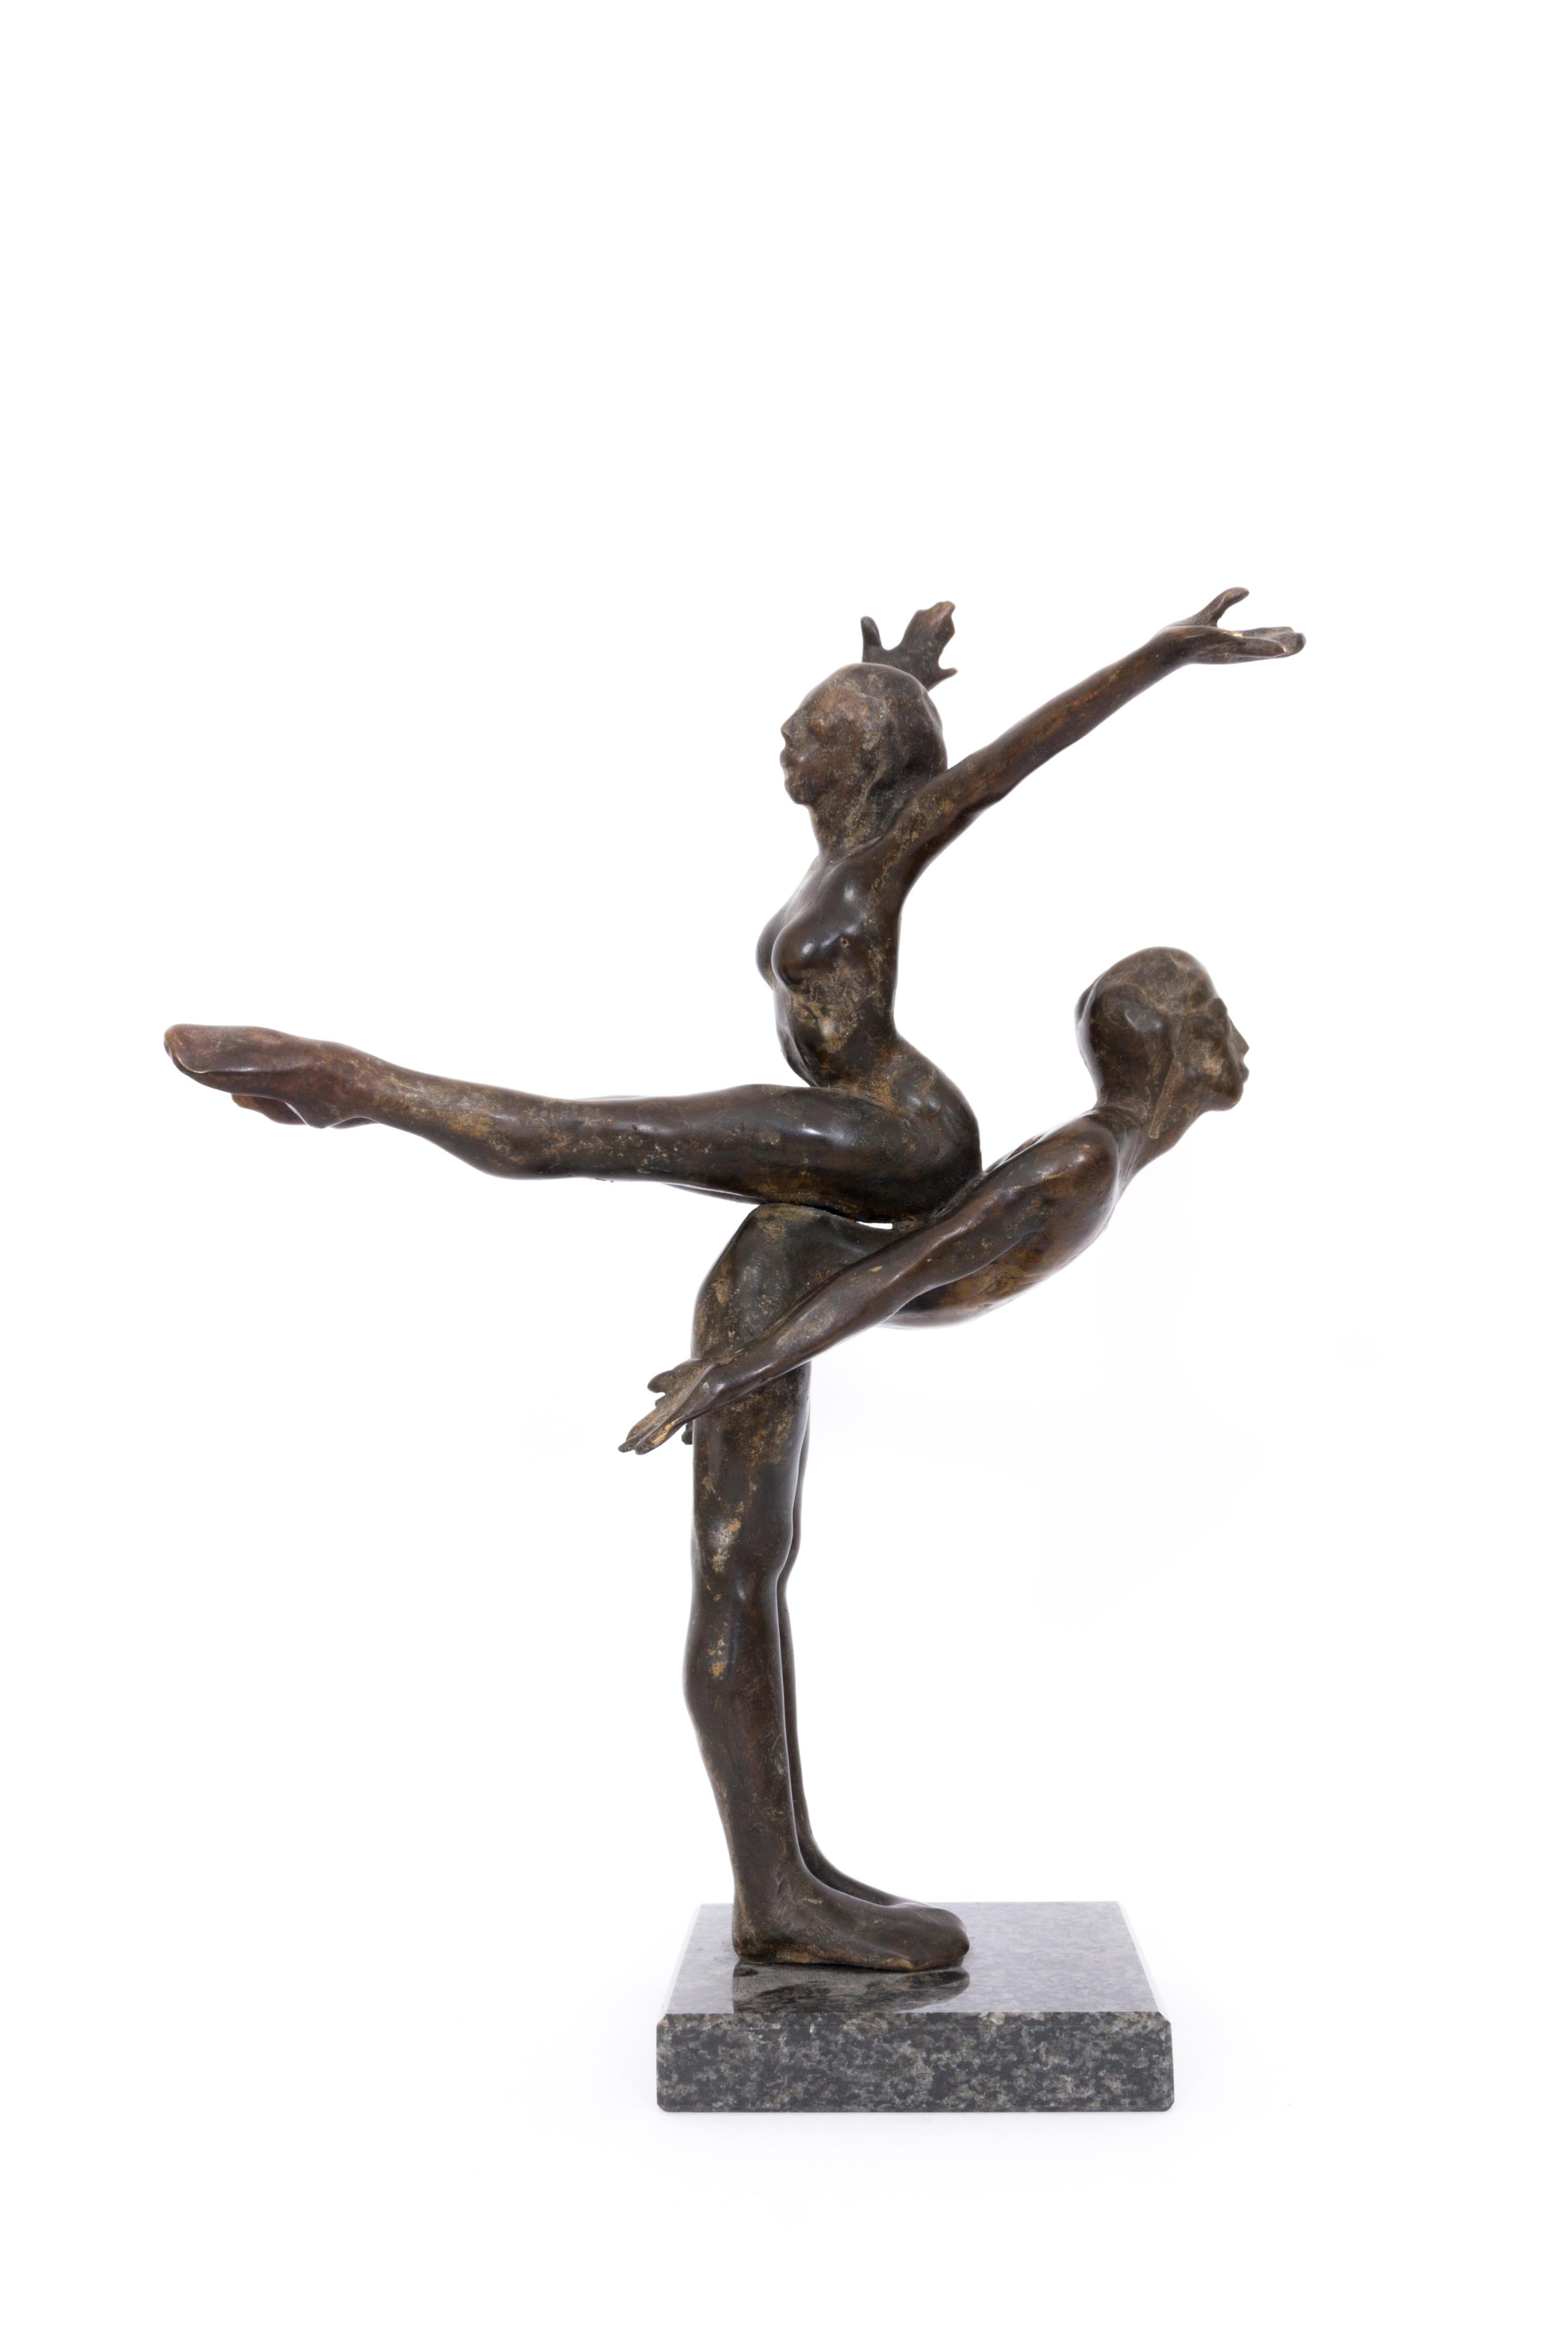 John W. Mills Figurative Sculpture – Jerome Robbins